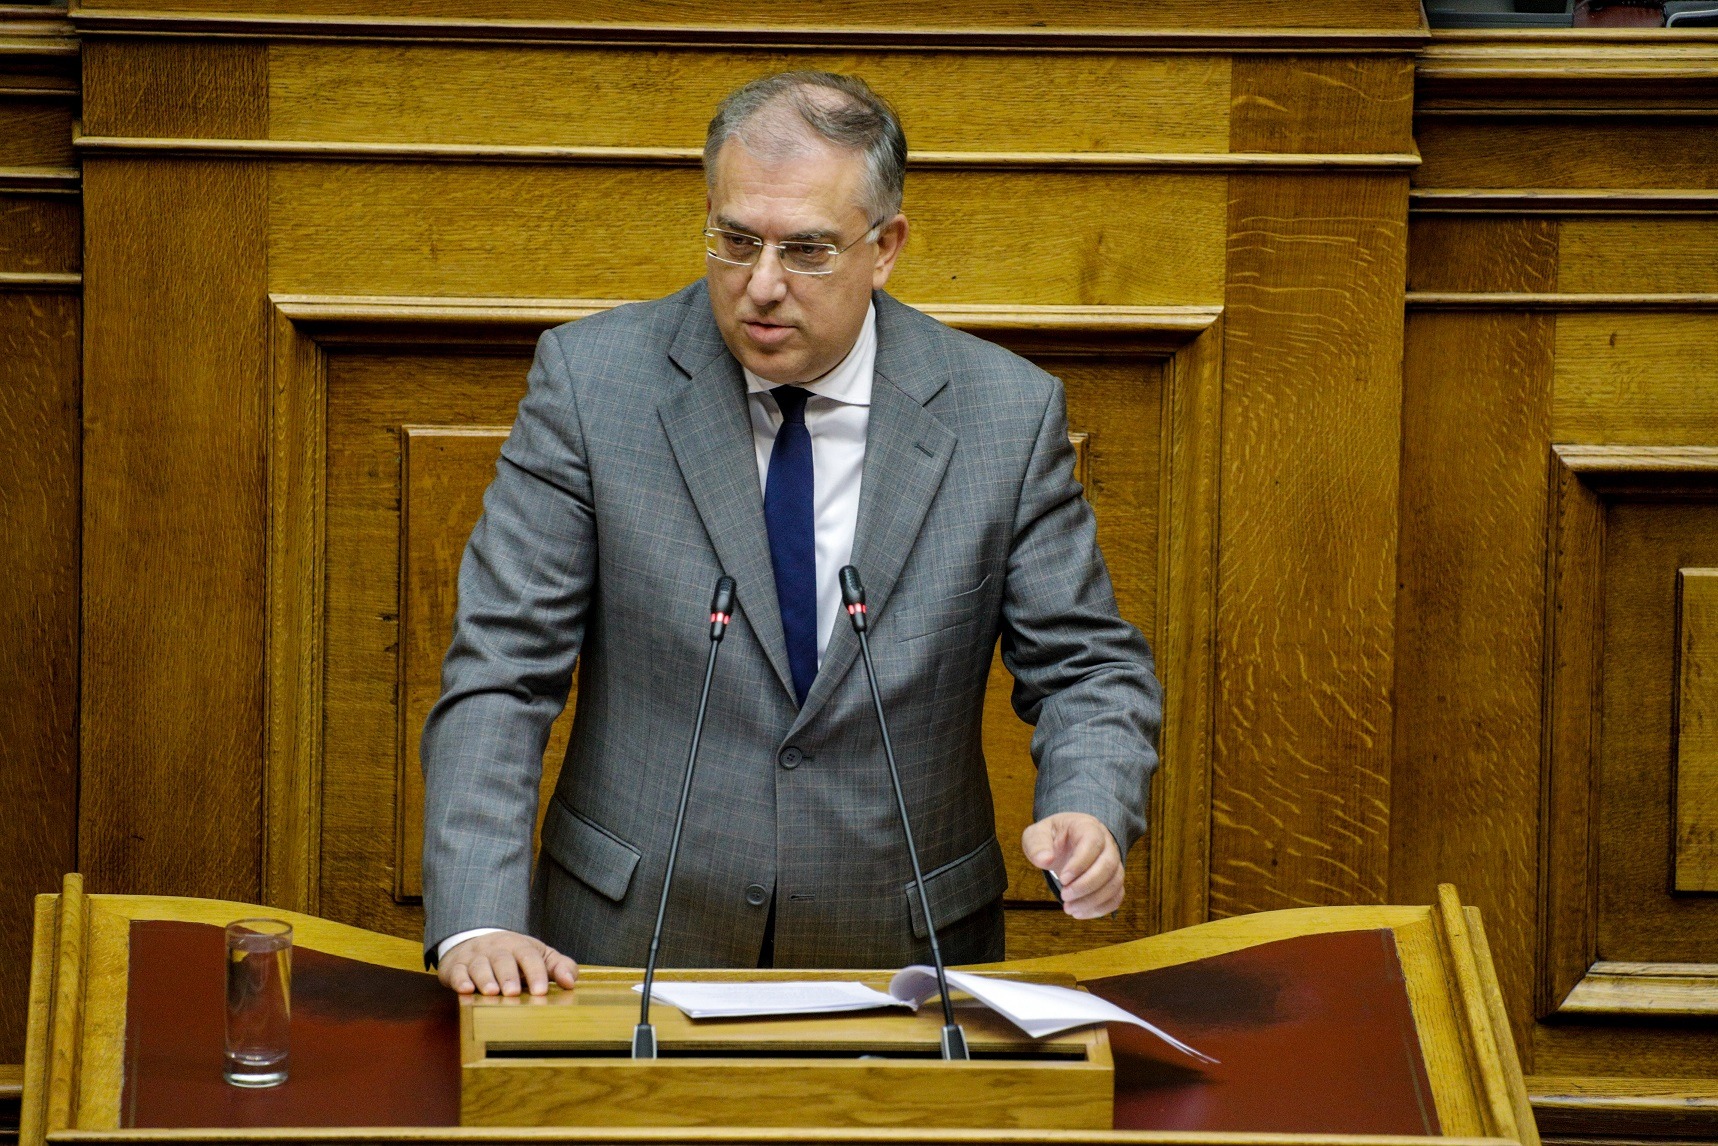 Ψήφος αποδήμων 2019 ψήφιση: Ψηφίζεται σήμερα στη Βουλή η ψήφος των Ελλήνων του εξωτερικού